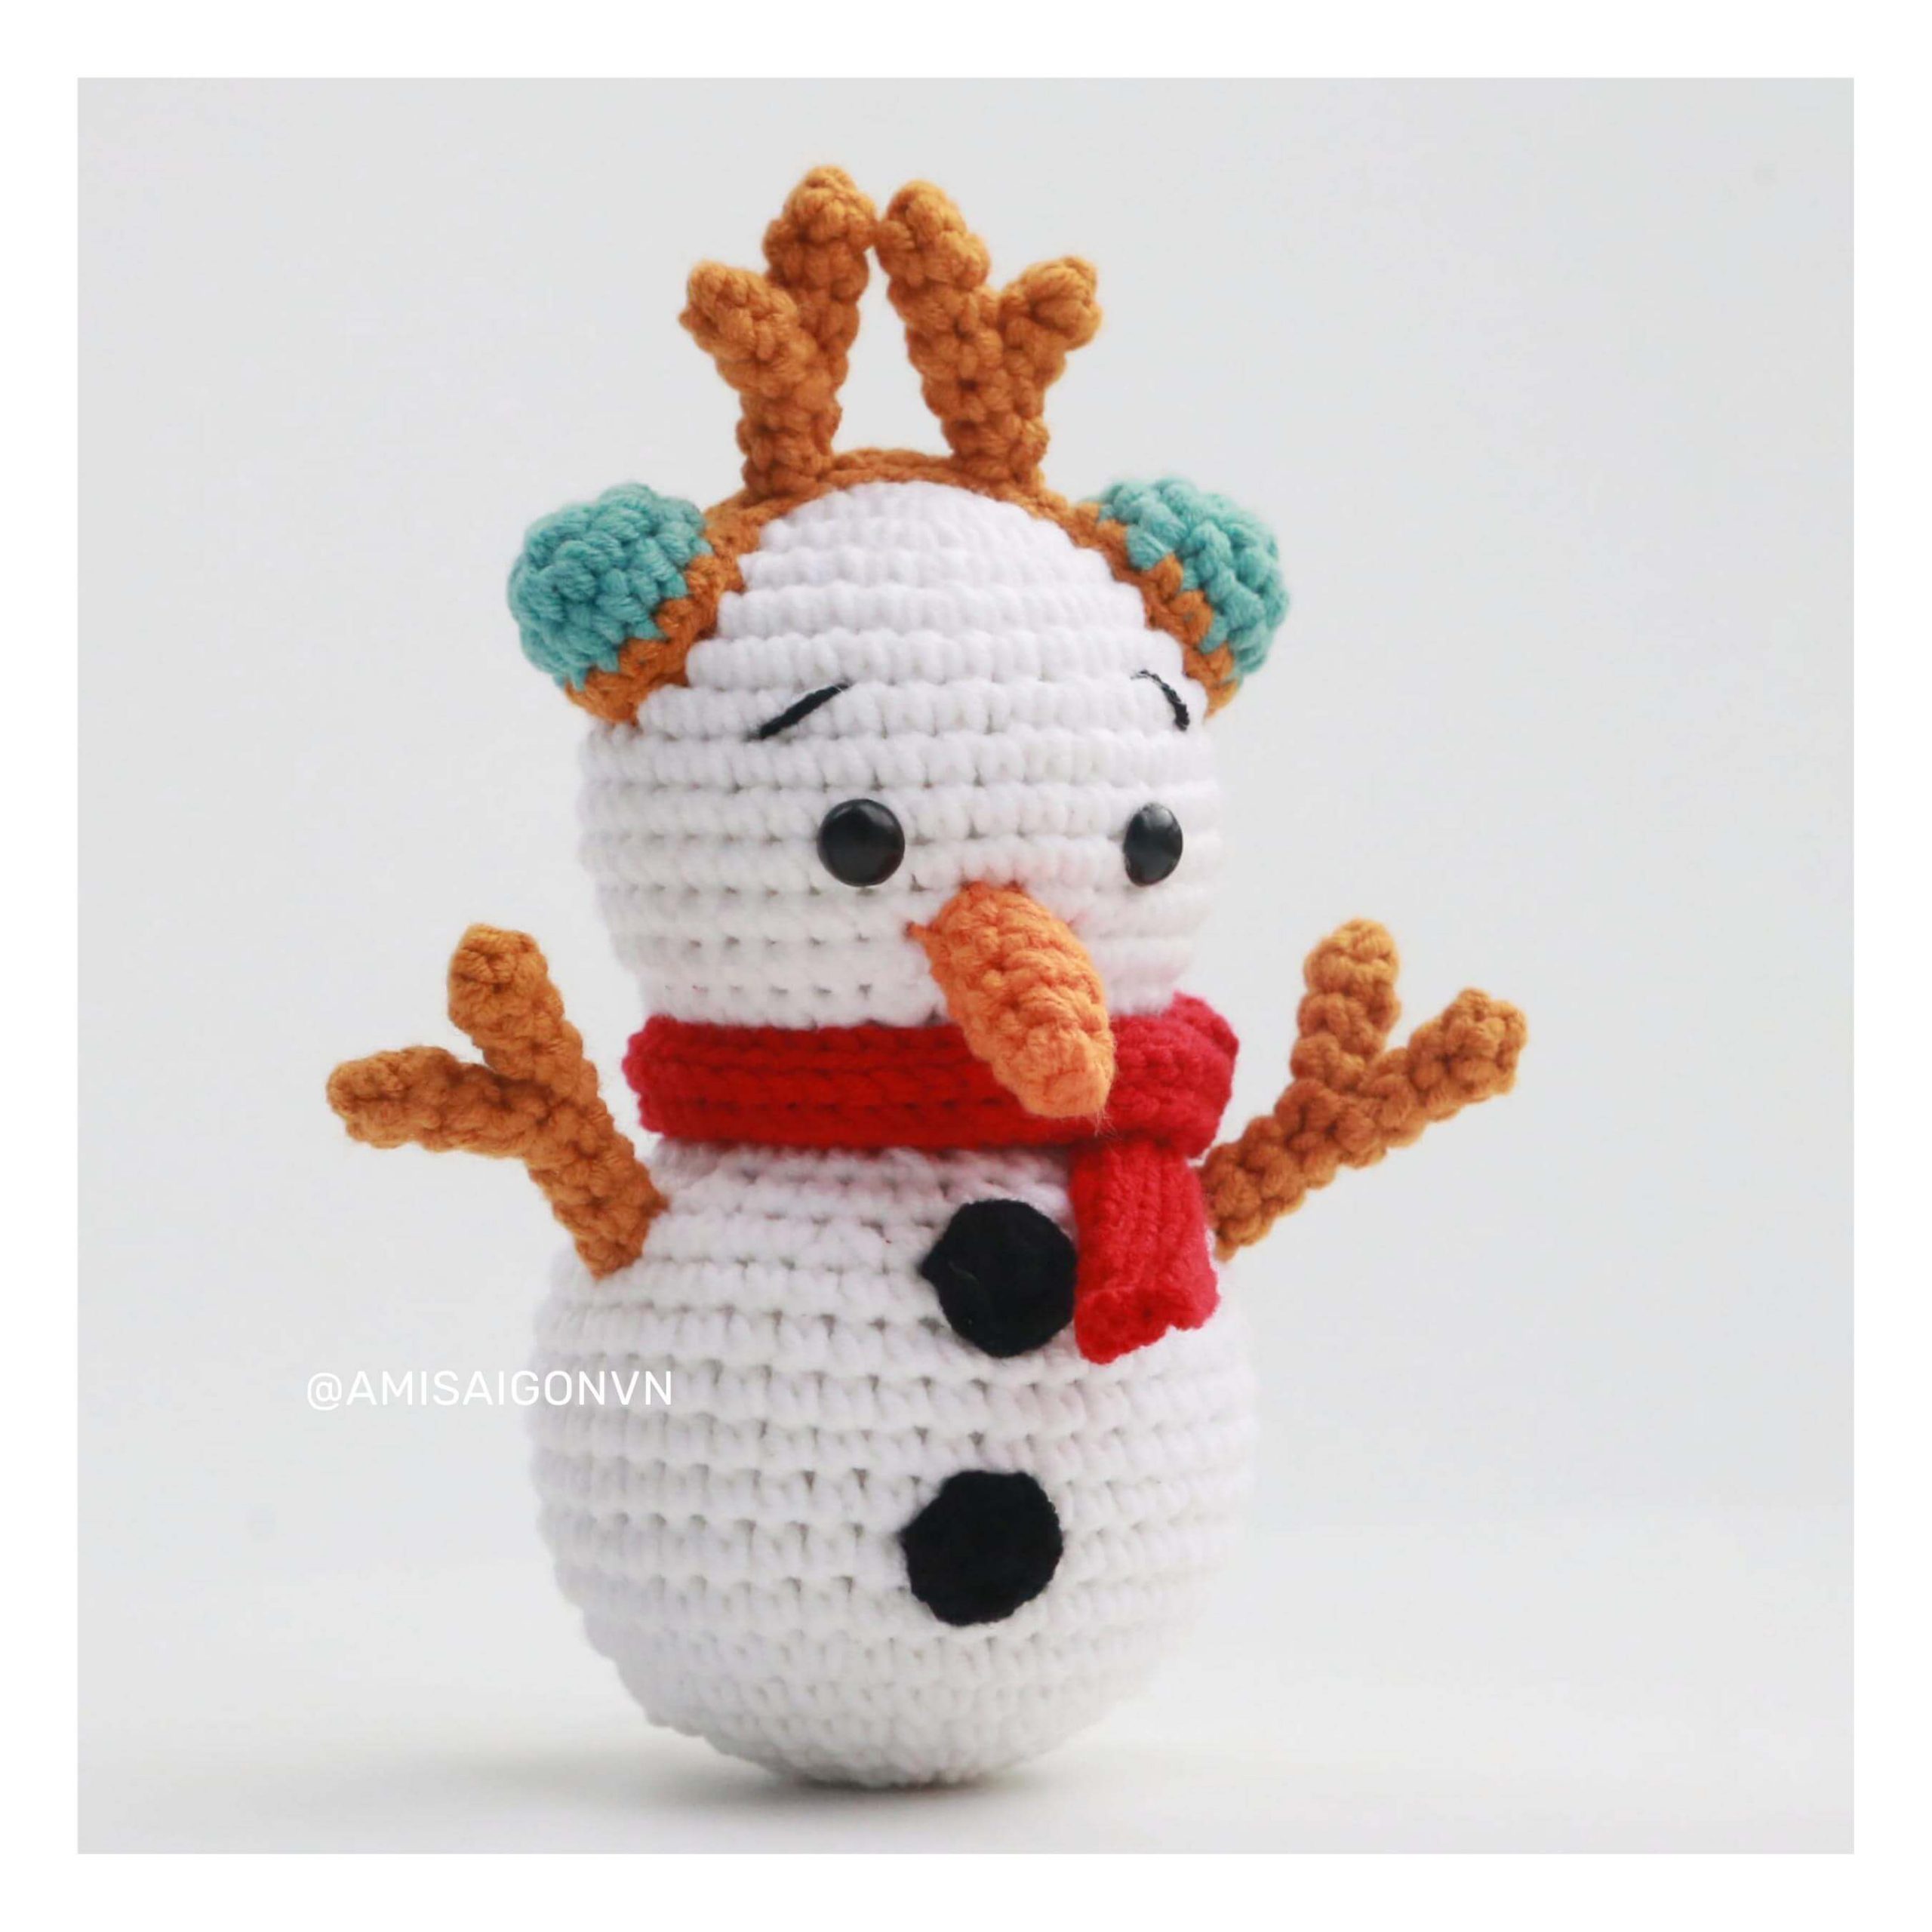 snowman-amigurumi-crochet-pattern-amisaigon (10)